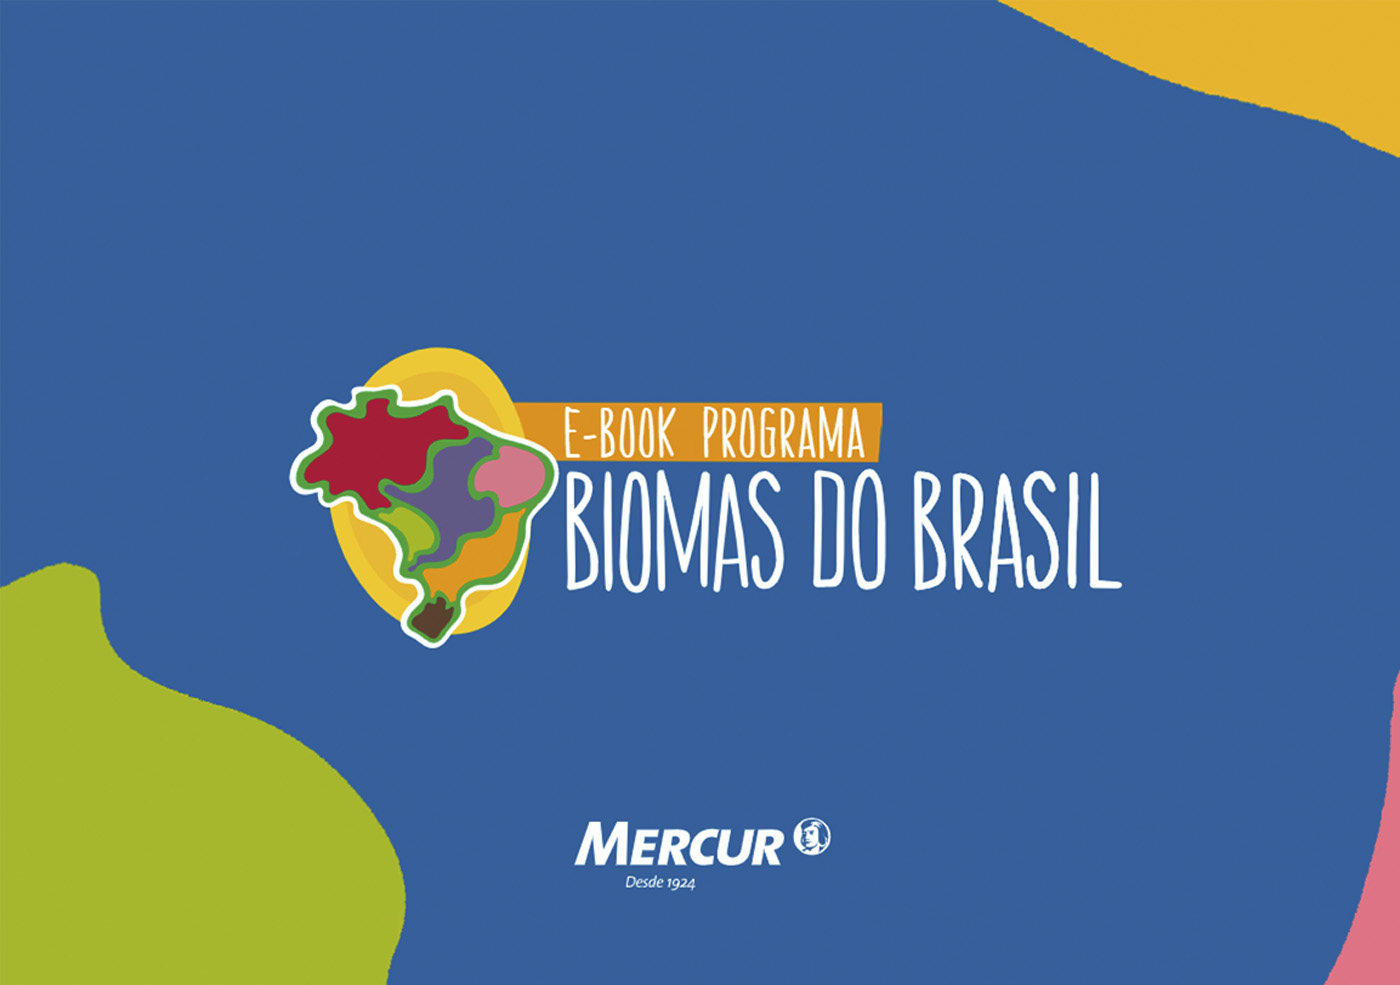 E-book programa Biomas do Brasil